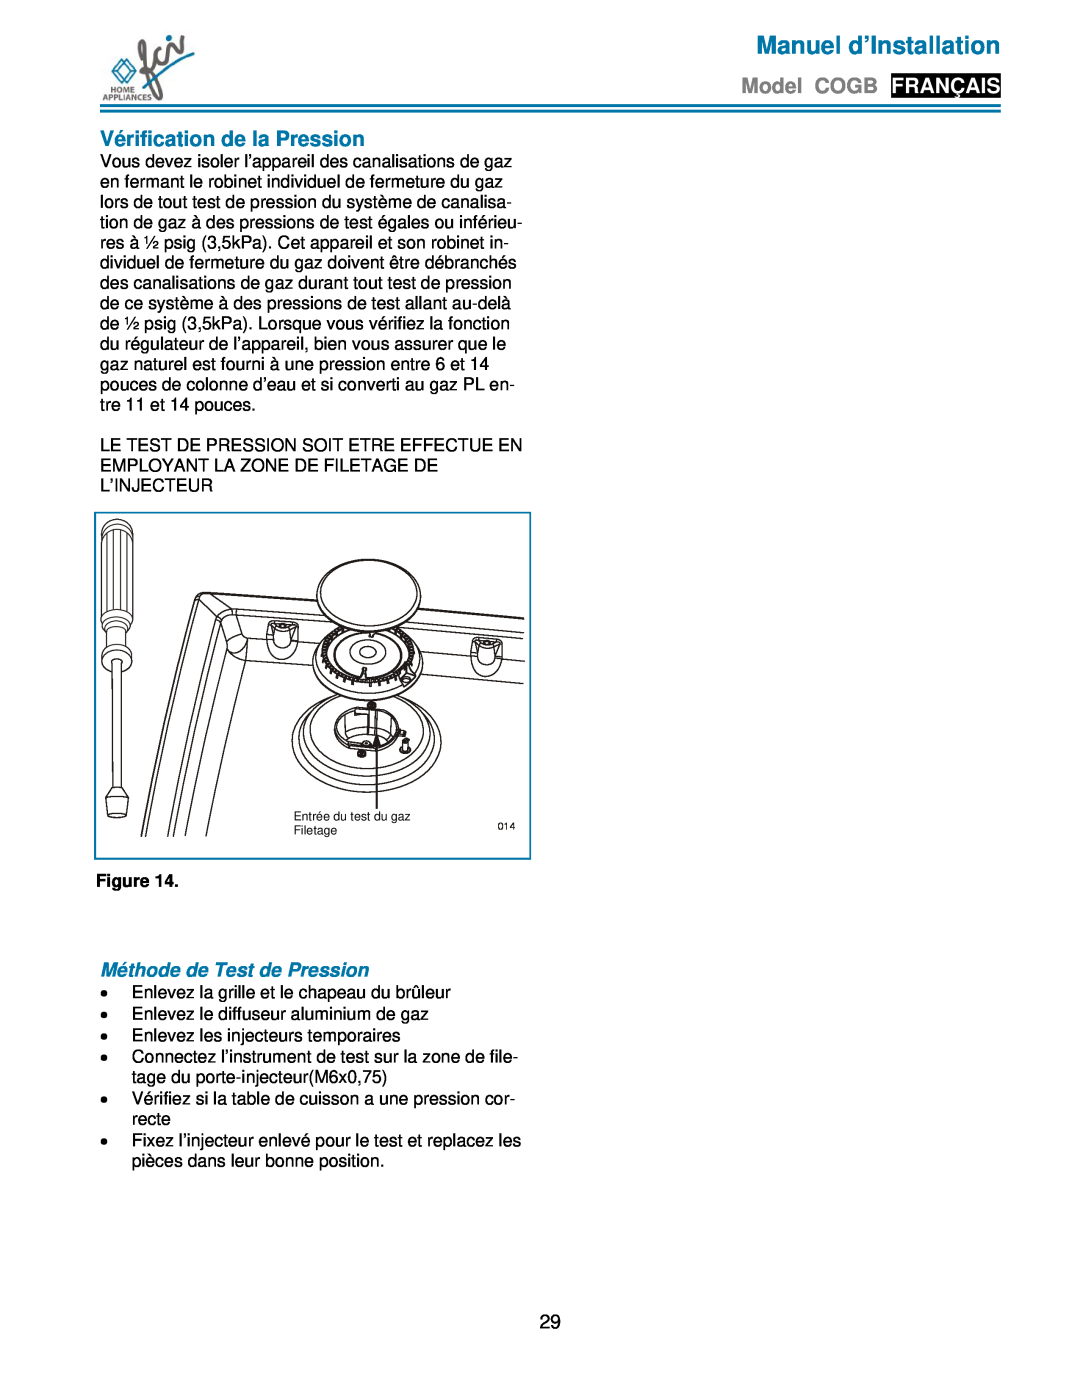 FCI Home Appliances COGB 33062/L/SS Vérification de la Pression, Méthode de Test de Pression, Manuel d’Installation 